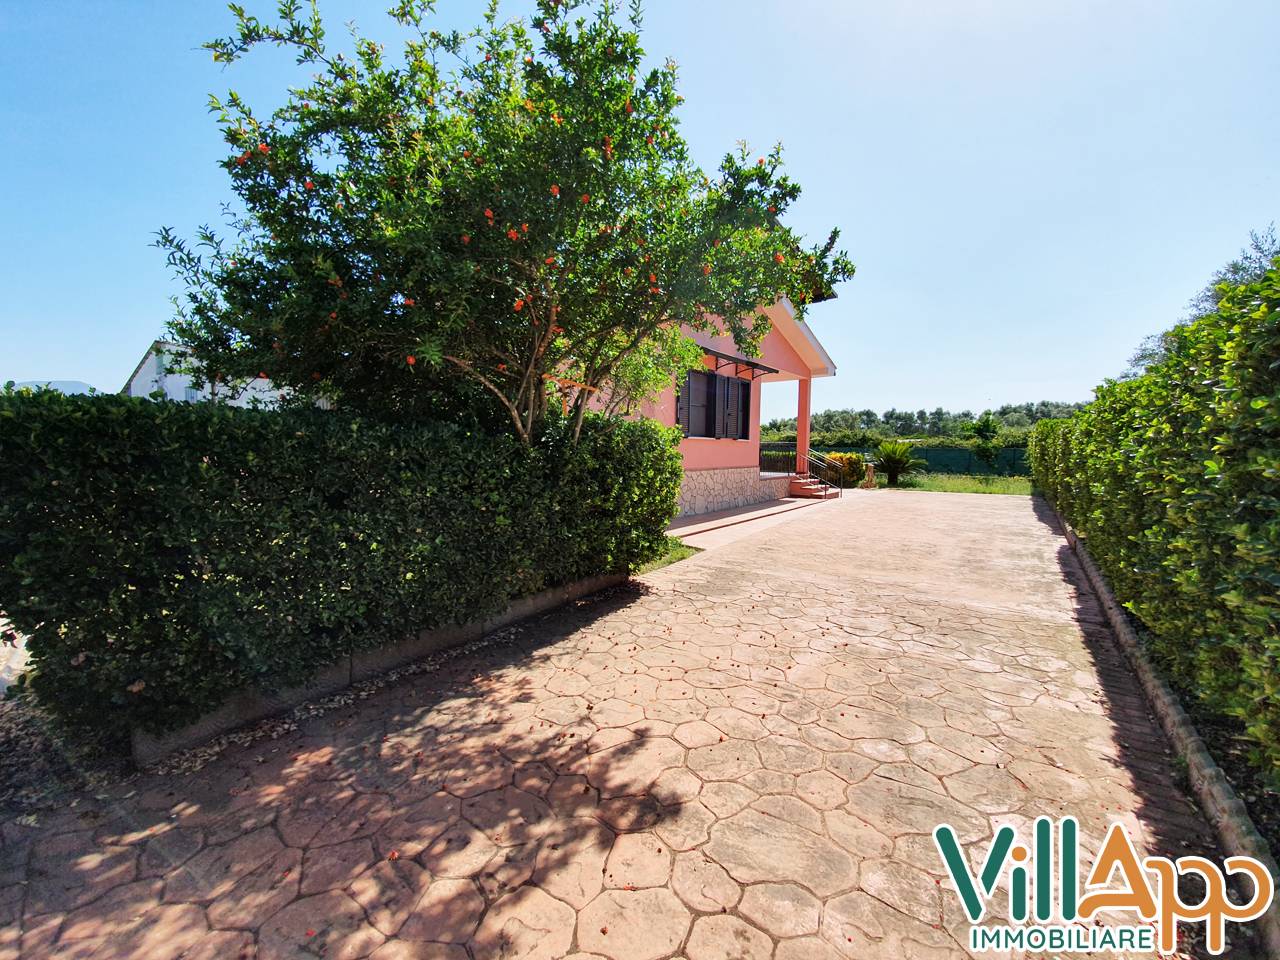 Villa in vendita a Fondi, 6 locali, zona Località: SaltodiFondi, prezzo € 189.000 | PortaleAgenzieImmobiliari.it